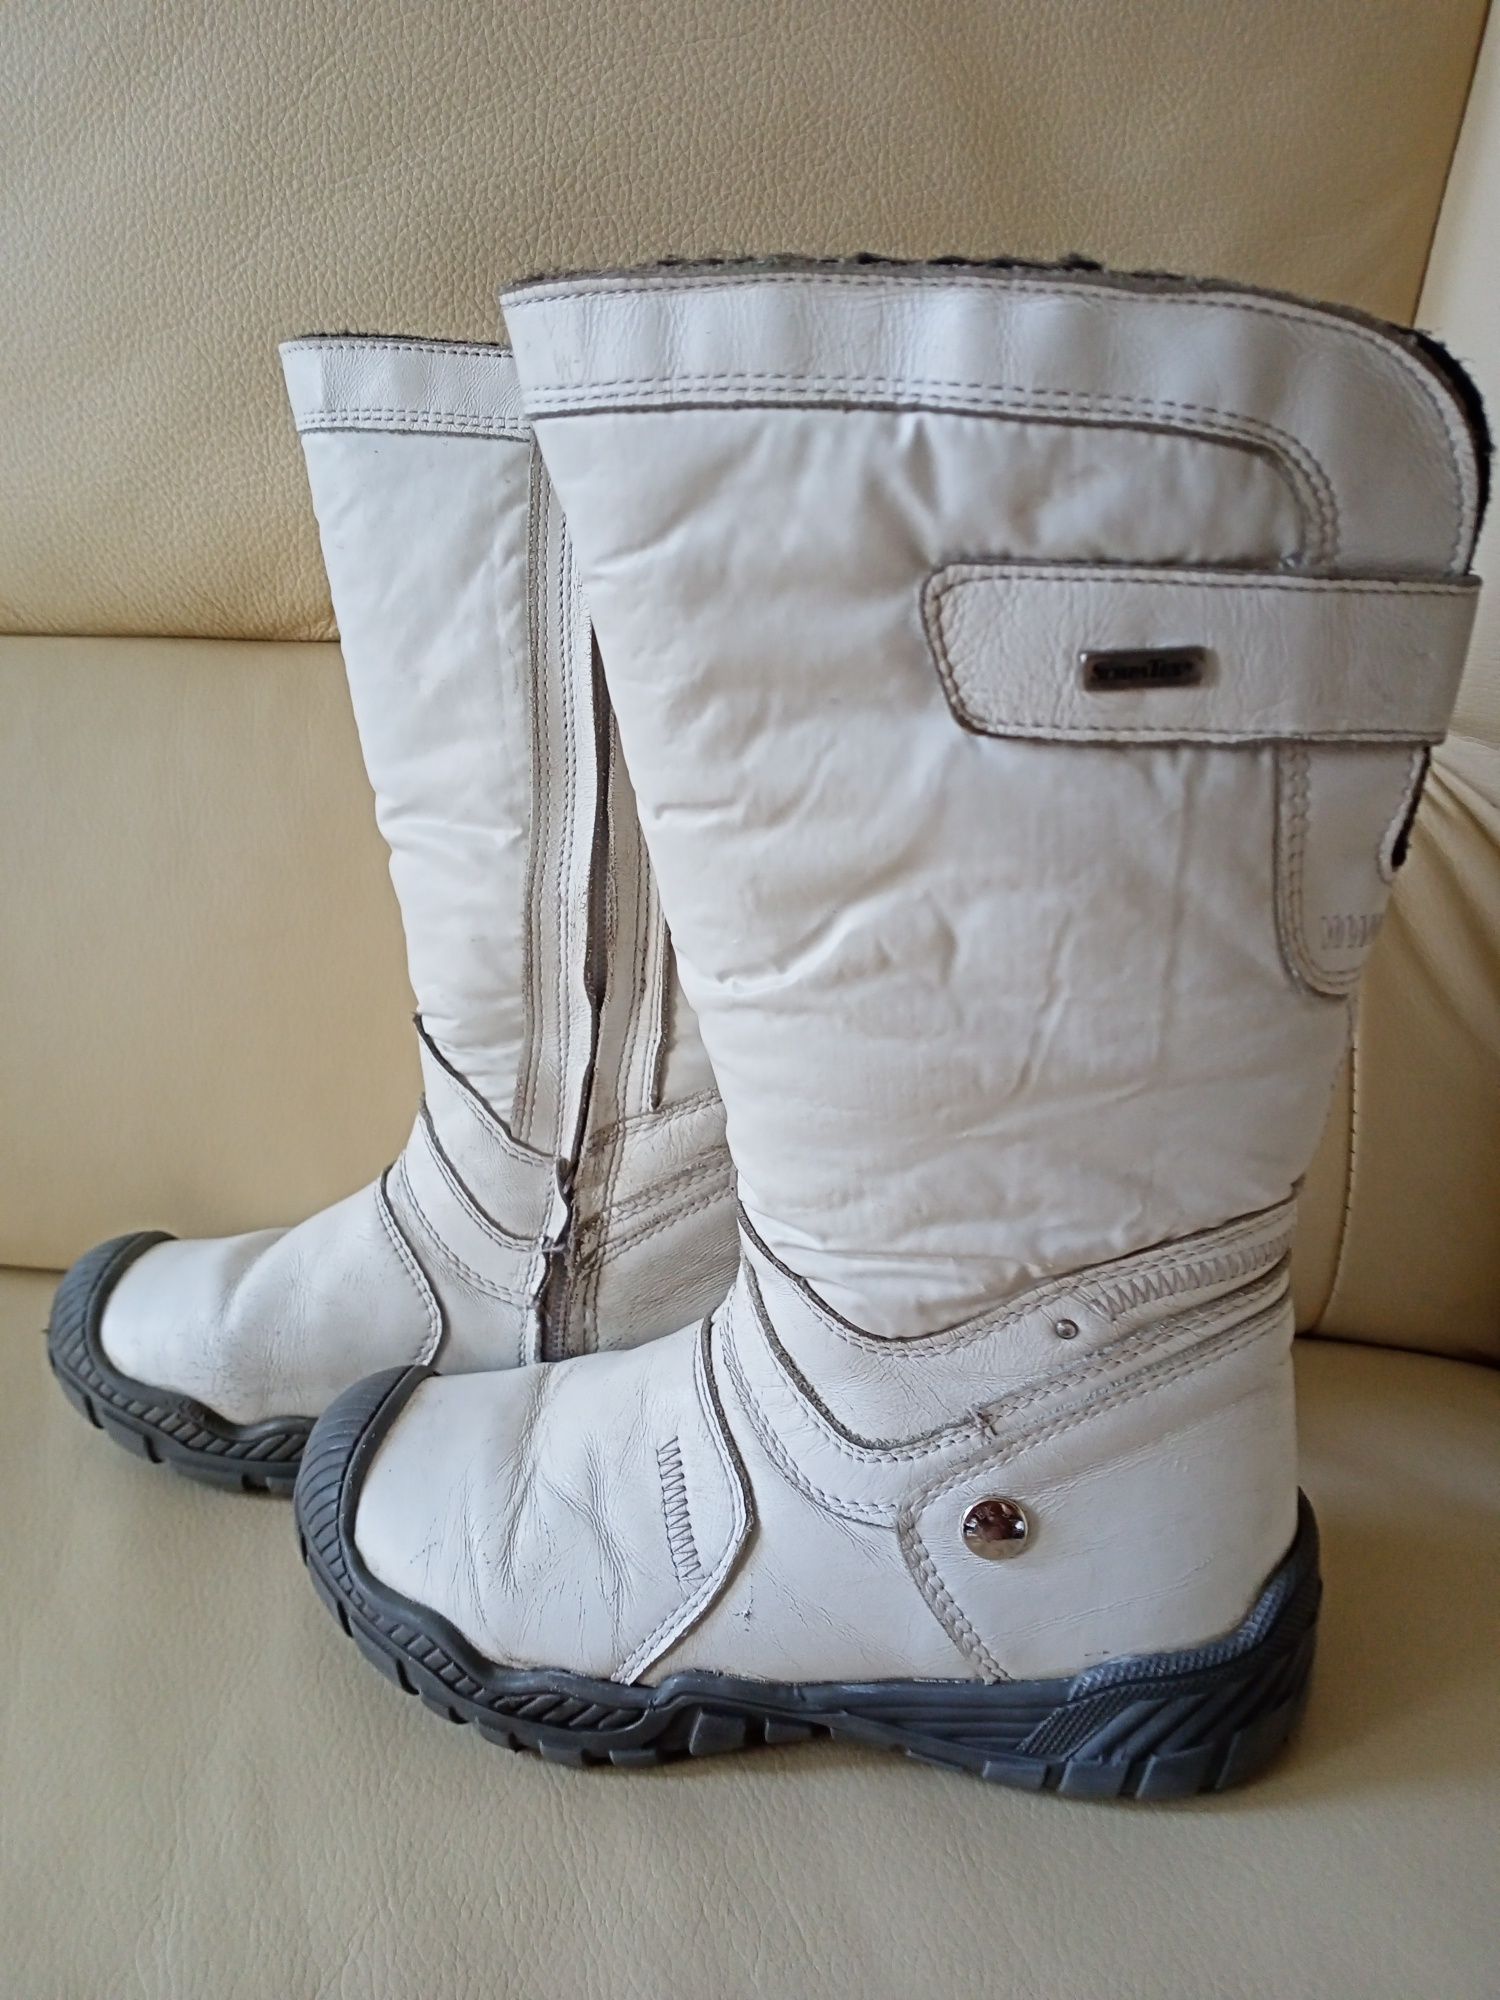 Buty Bartek białe zimowe śniegowce rozmiar 30